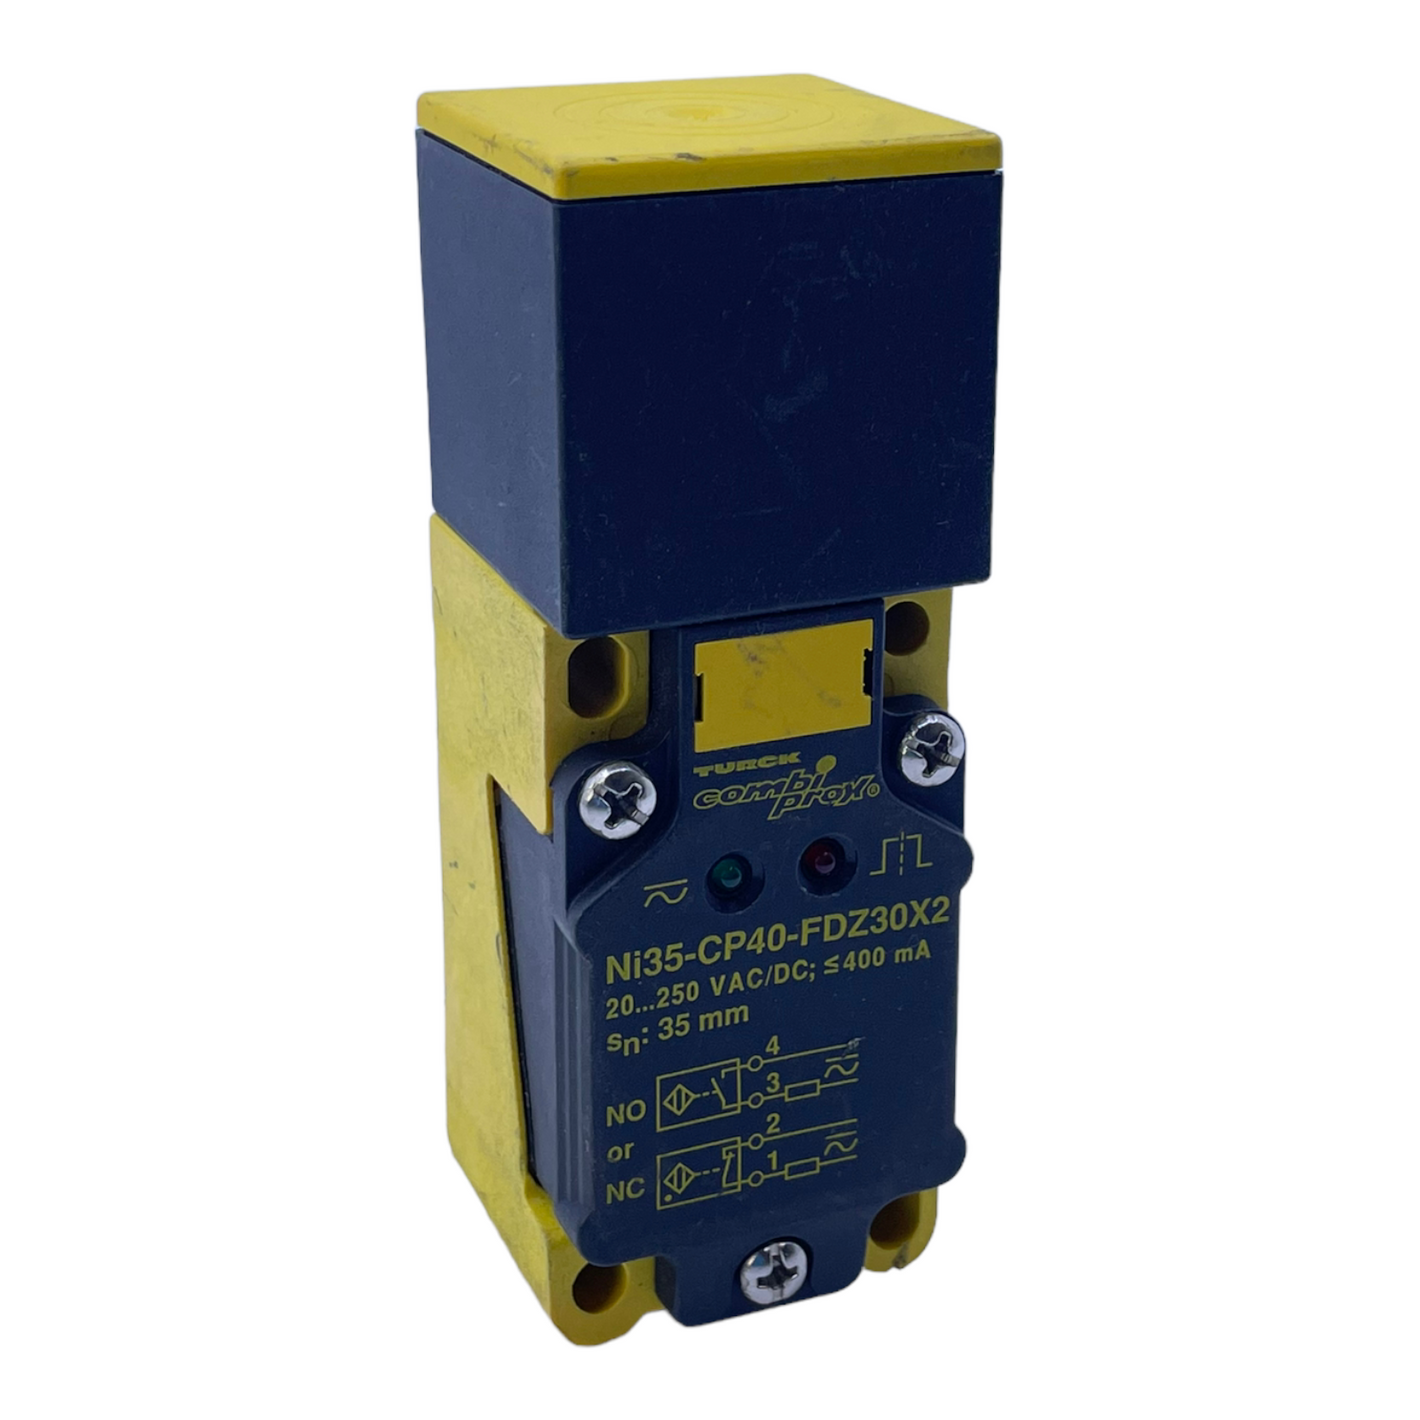 Turck Ni35-CP40-FDZ30X2 Induktiver Sensor für industriellen Einsatz Sensor